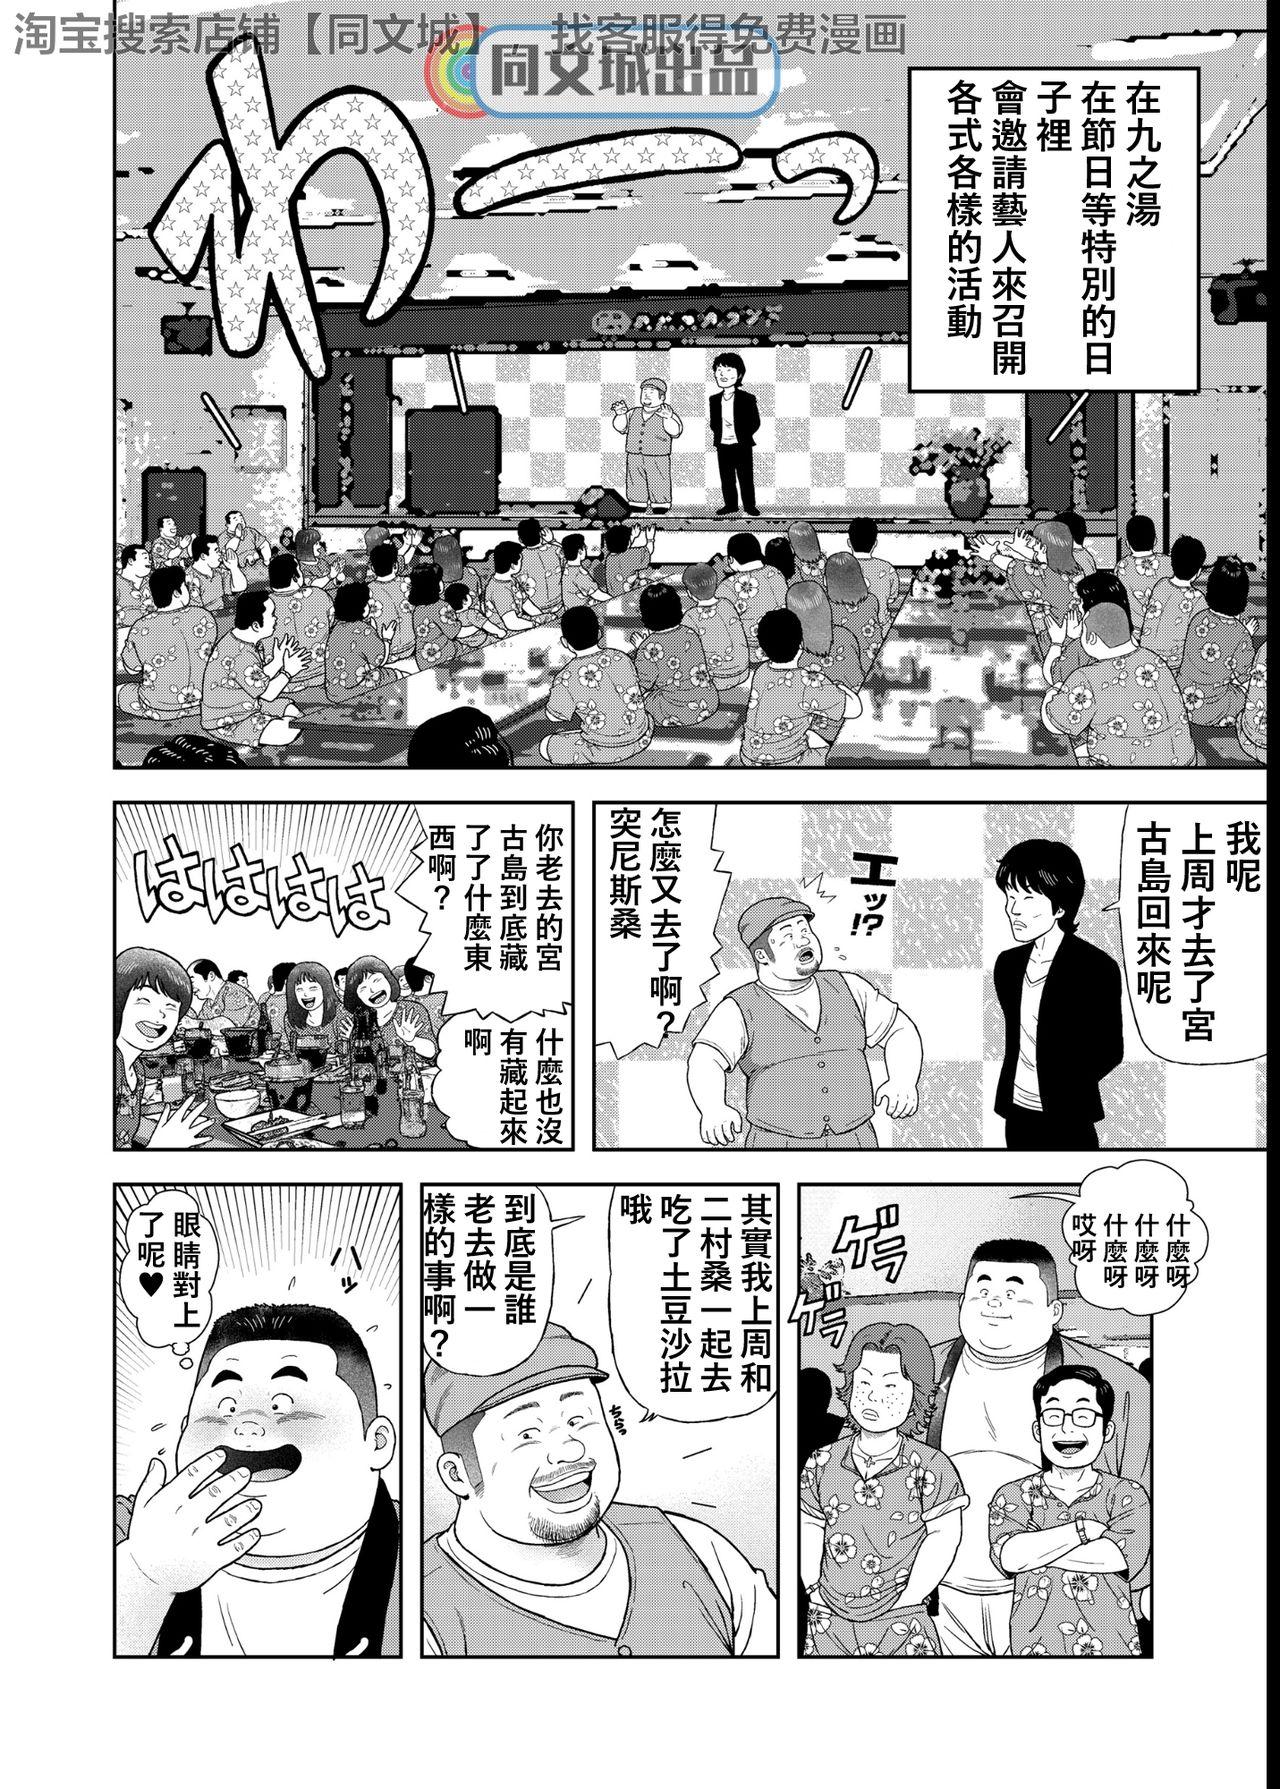 Jap Kunoyu Yonhatsume Geinin no Saga - Original Butt - Page 2